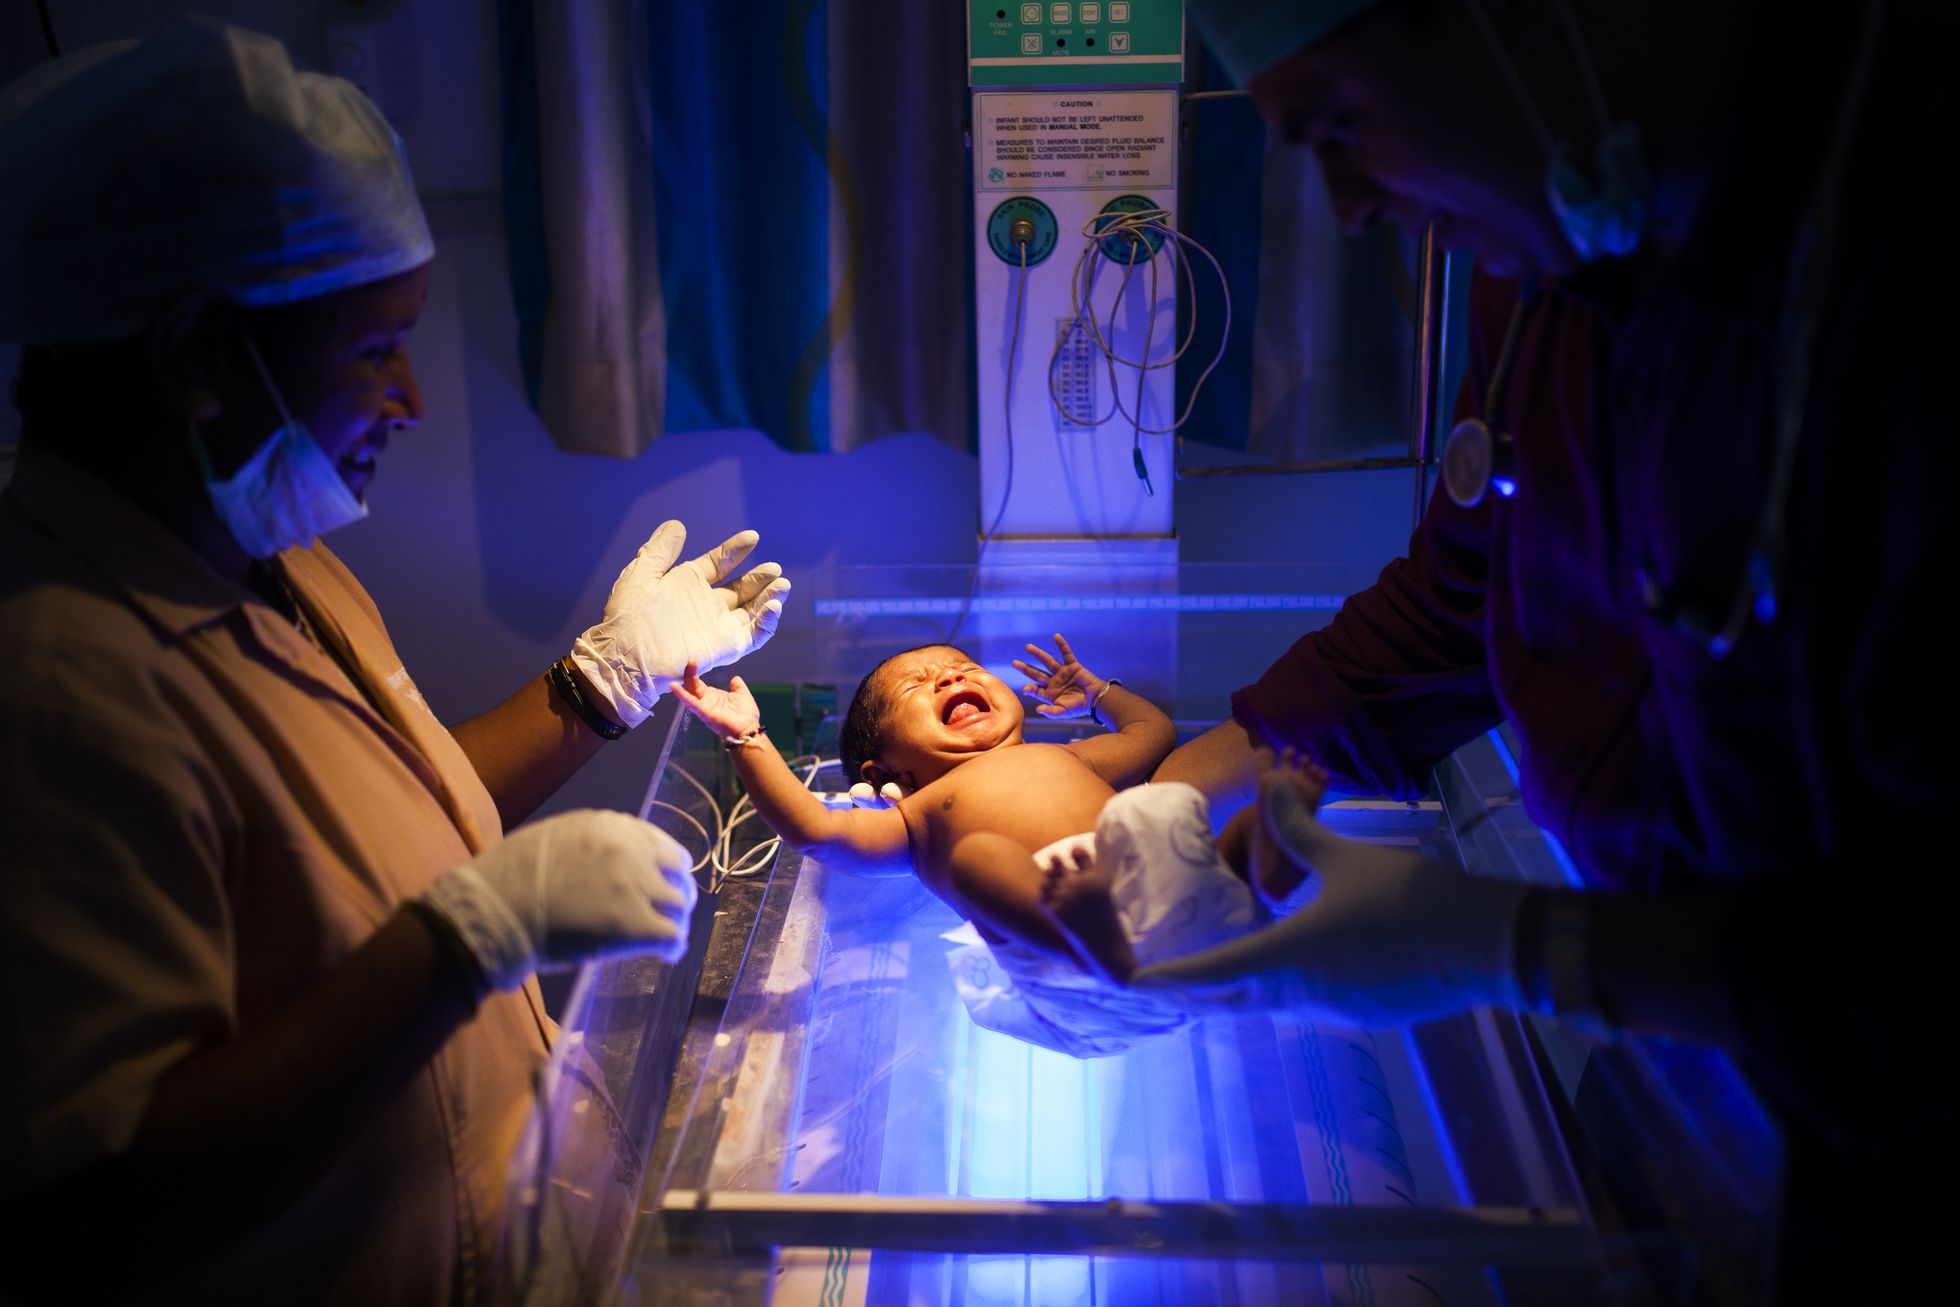 El doctor Rakh y una enfermera examinan a una niña recién nacida que llora en la incubadora.